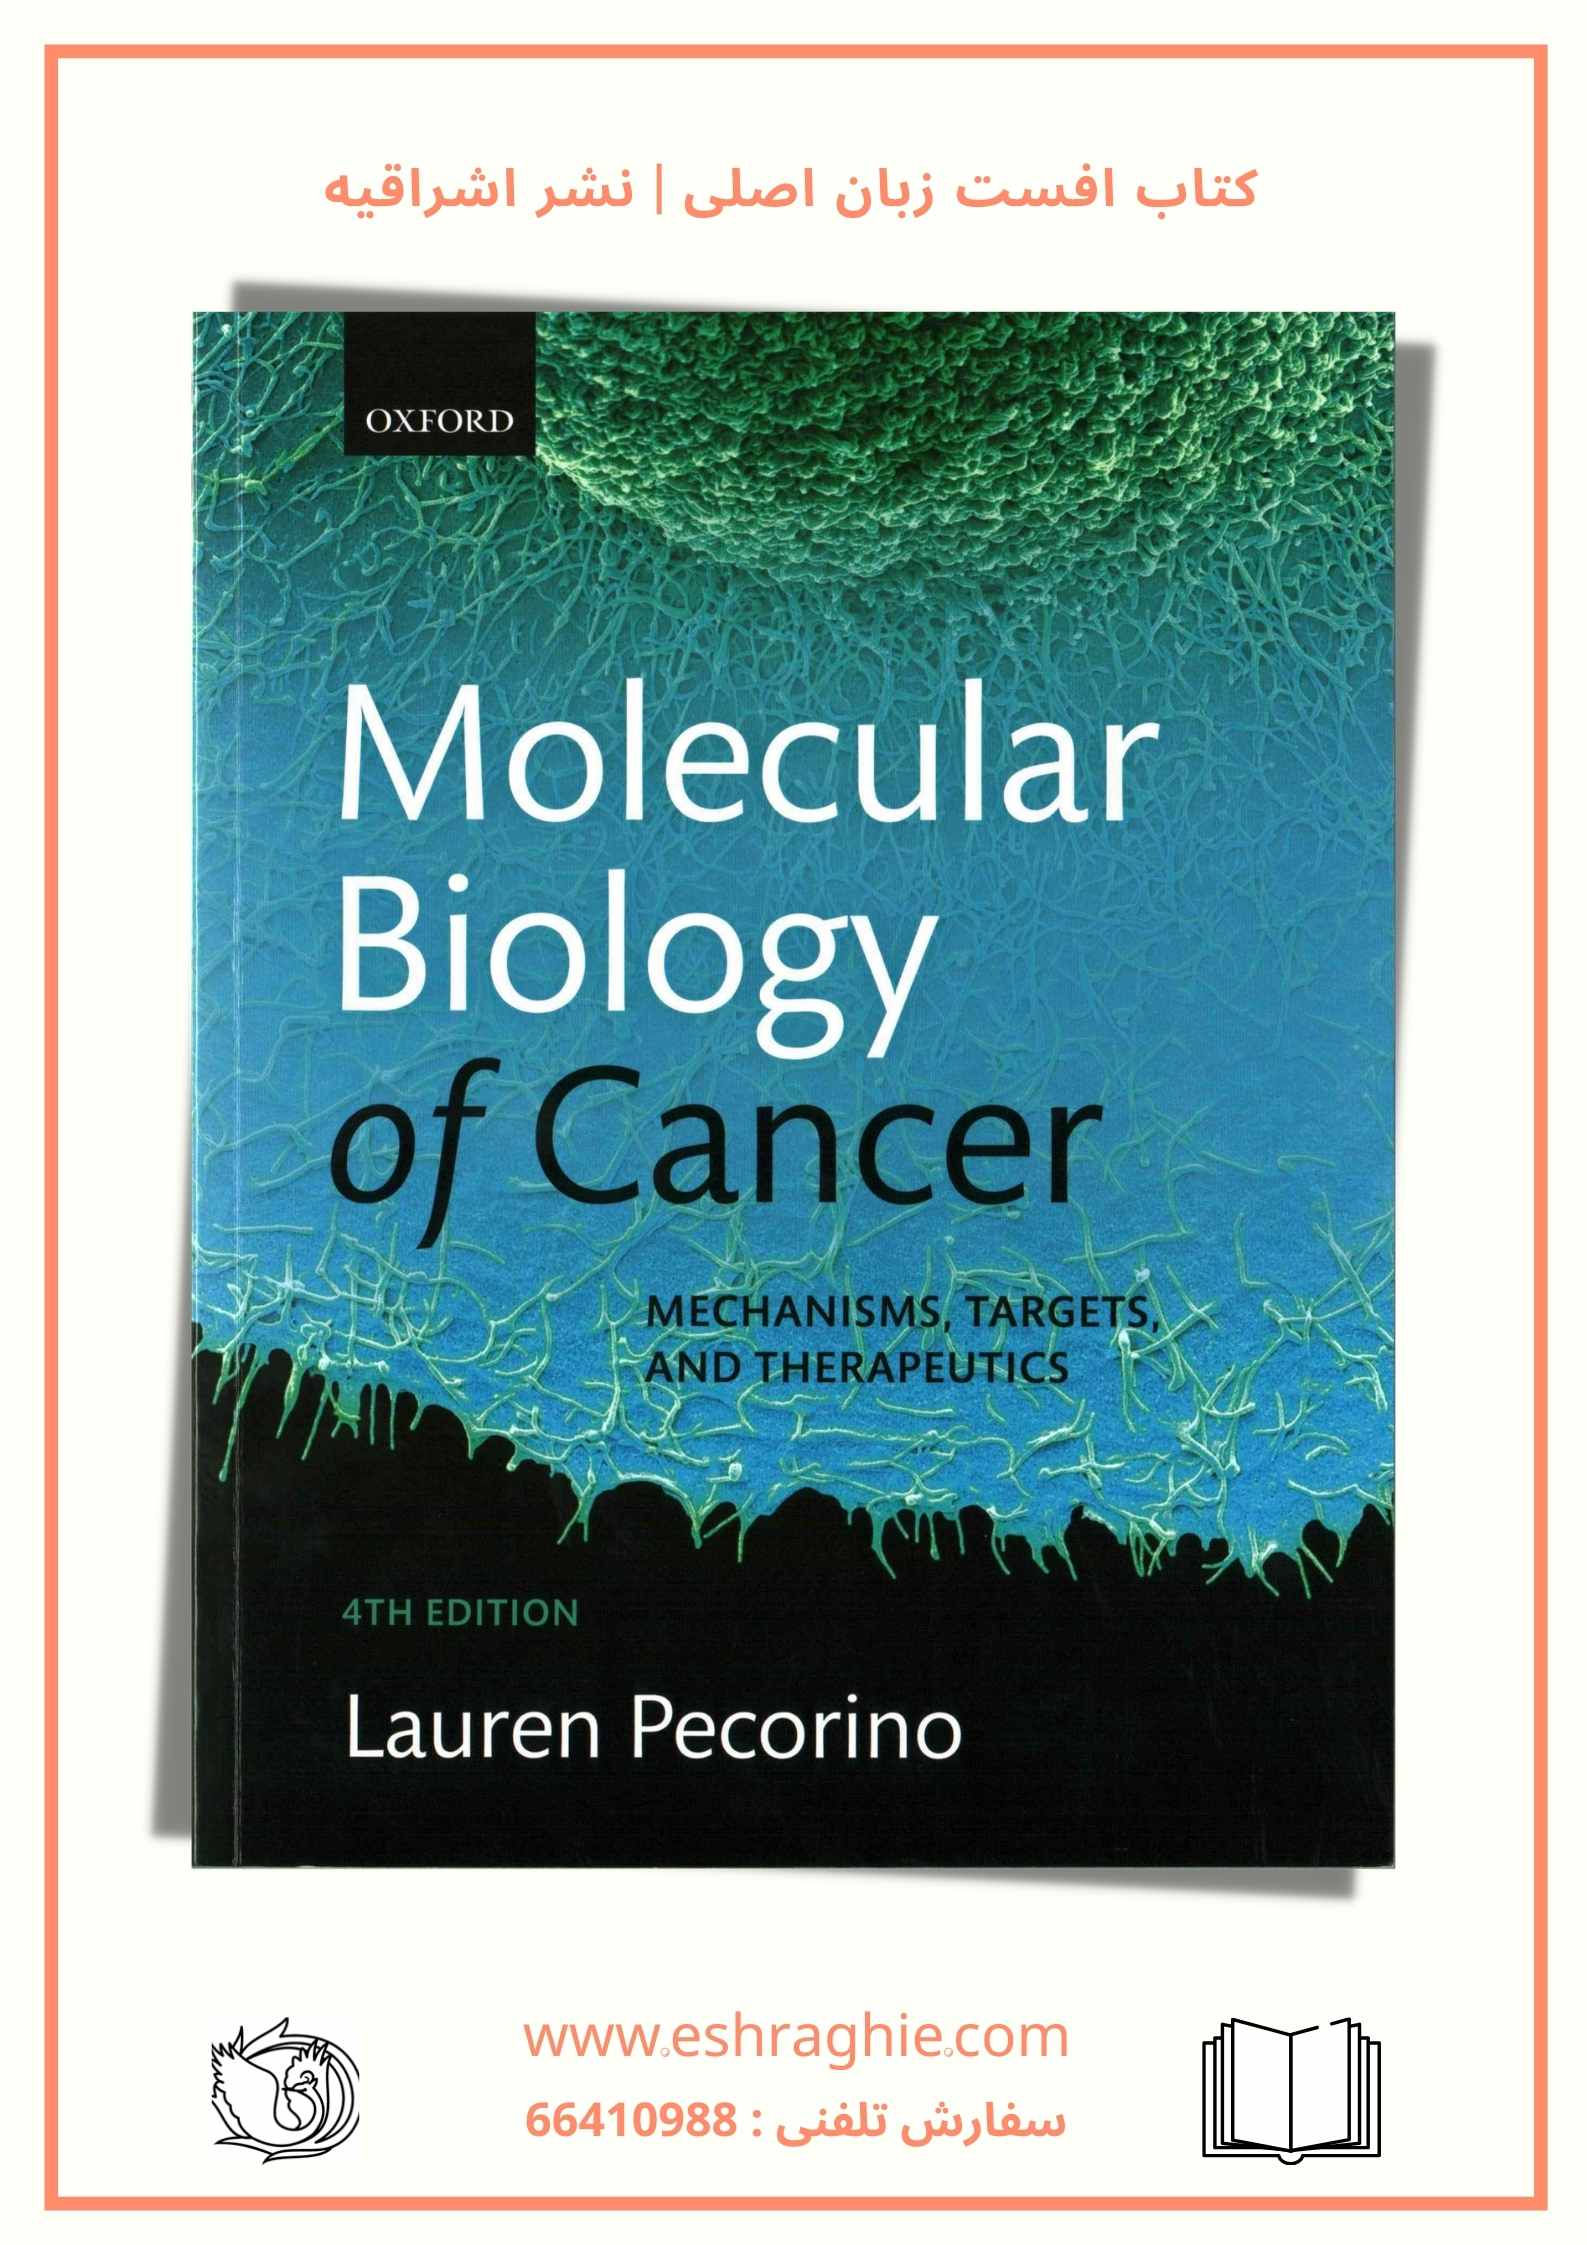 کتاب افست زبان اصلی بیولوژی سرطان پکورینو 2016